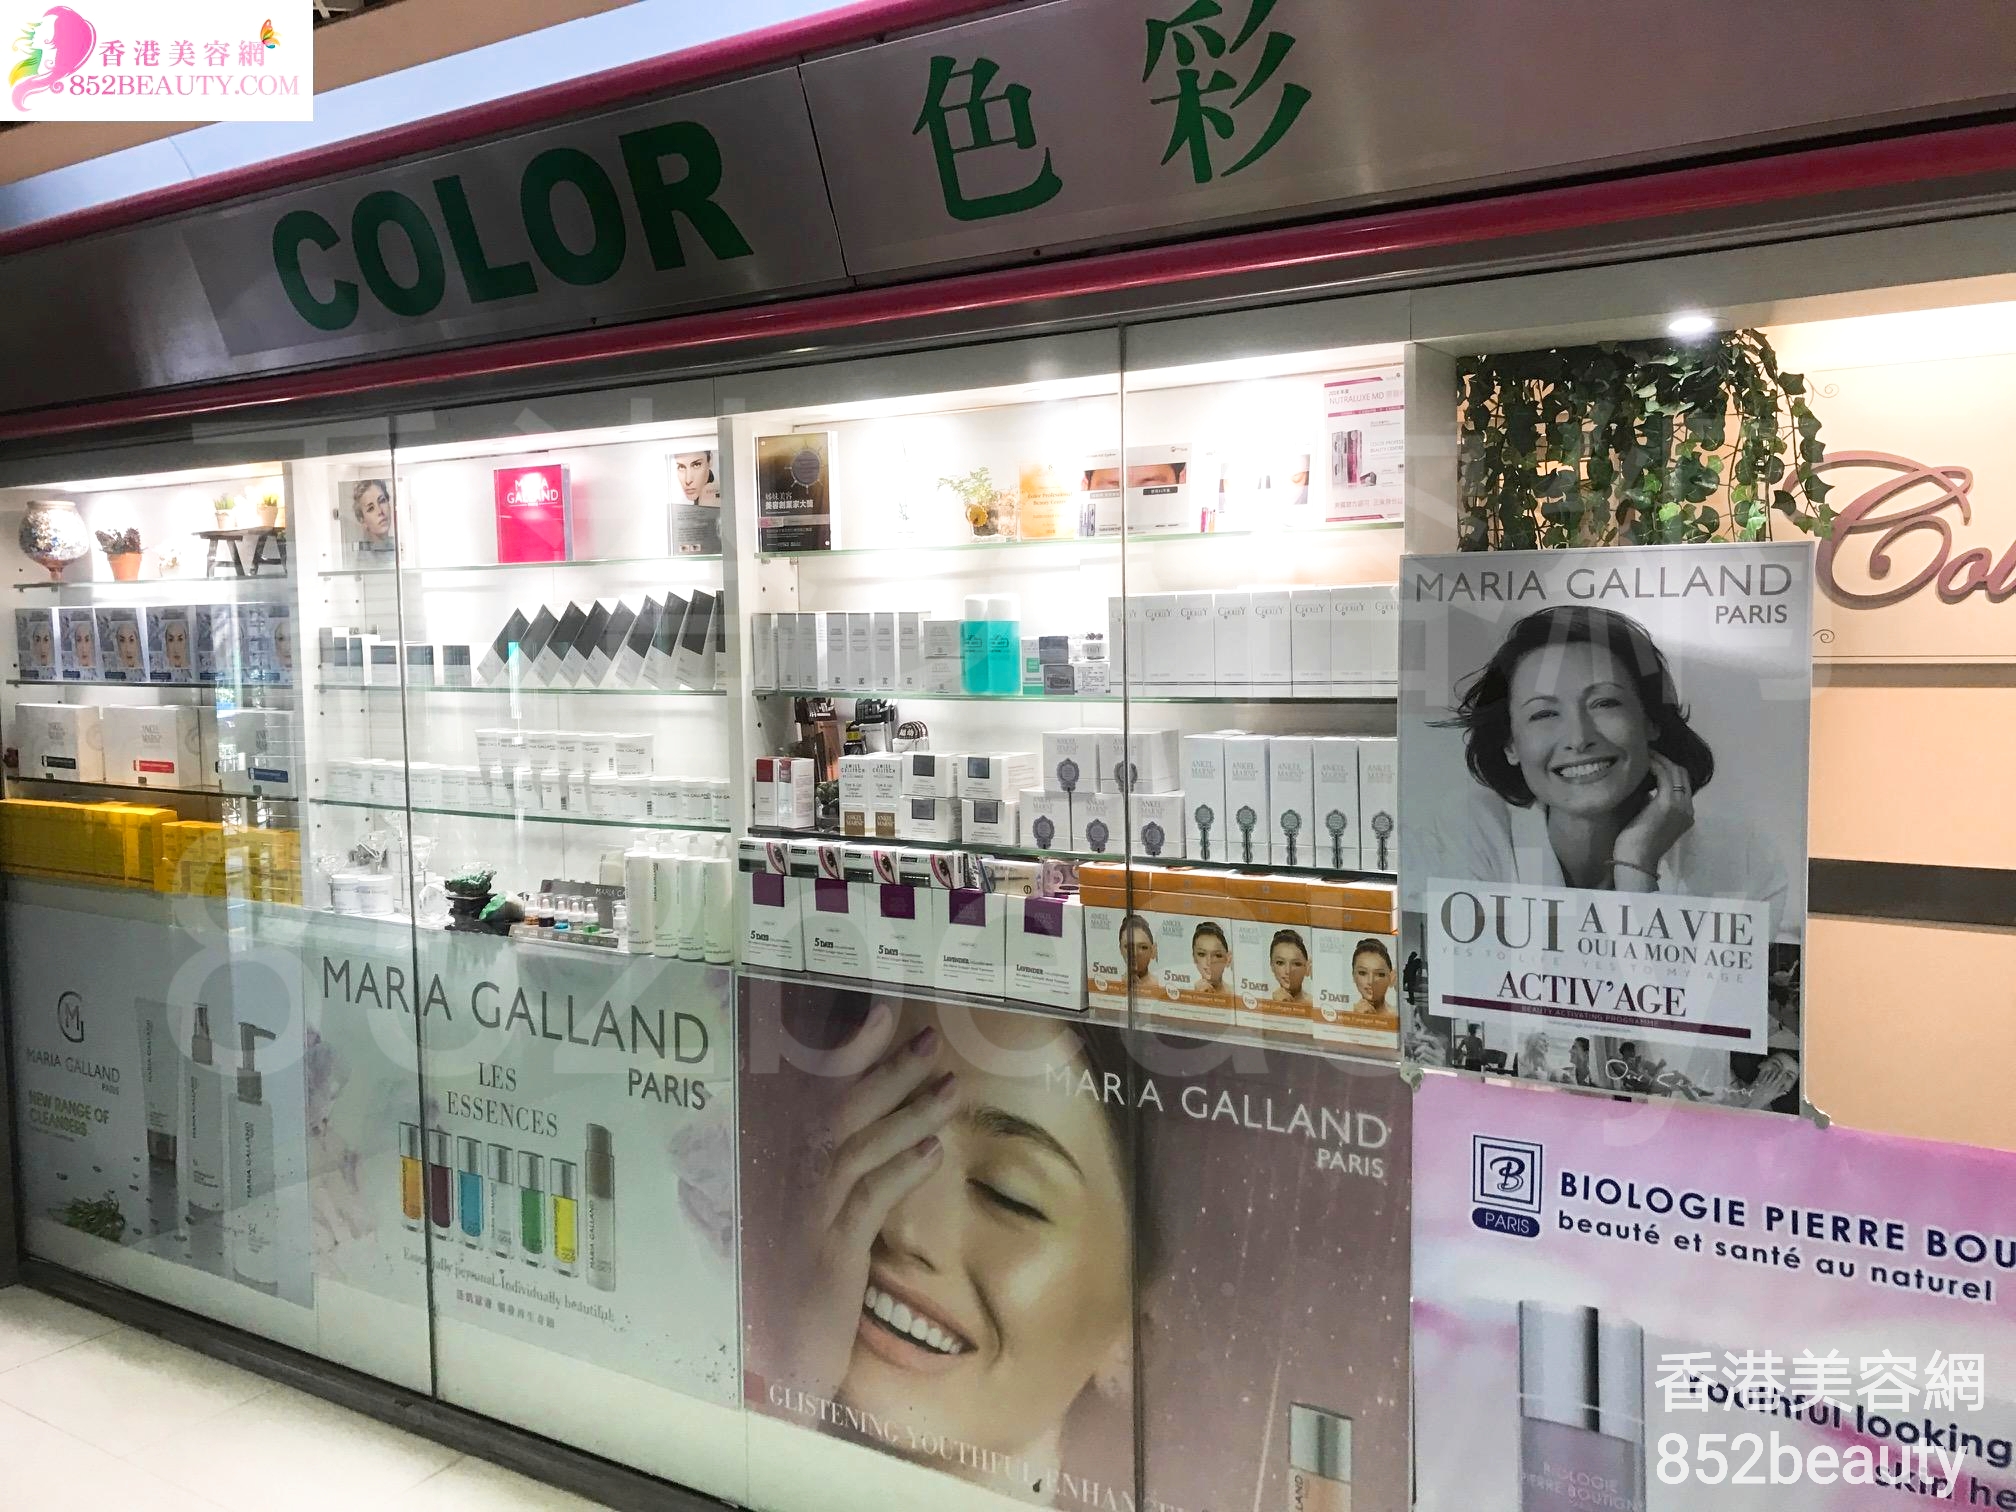 香港美容網 Hong Kong Beauty Salon 美容院 / 美容師: 色彩專業美容中心